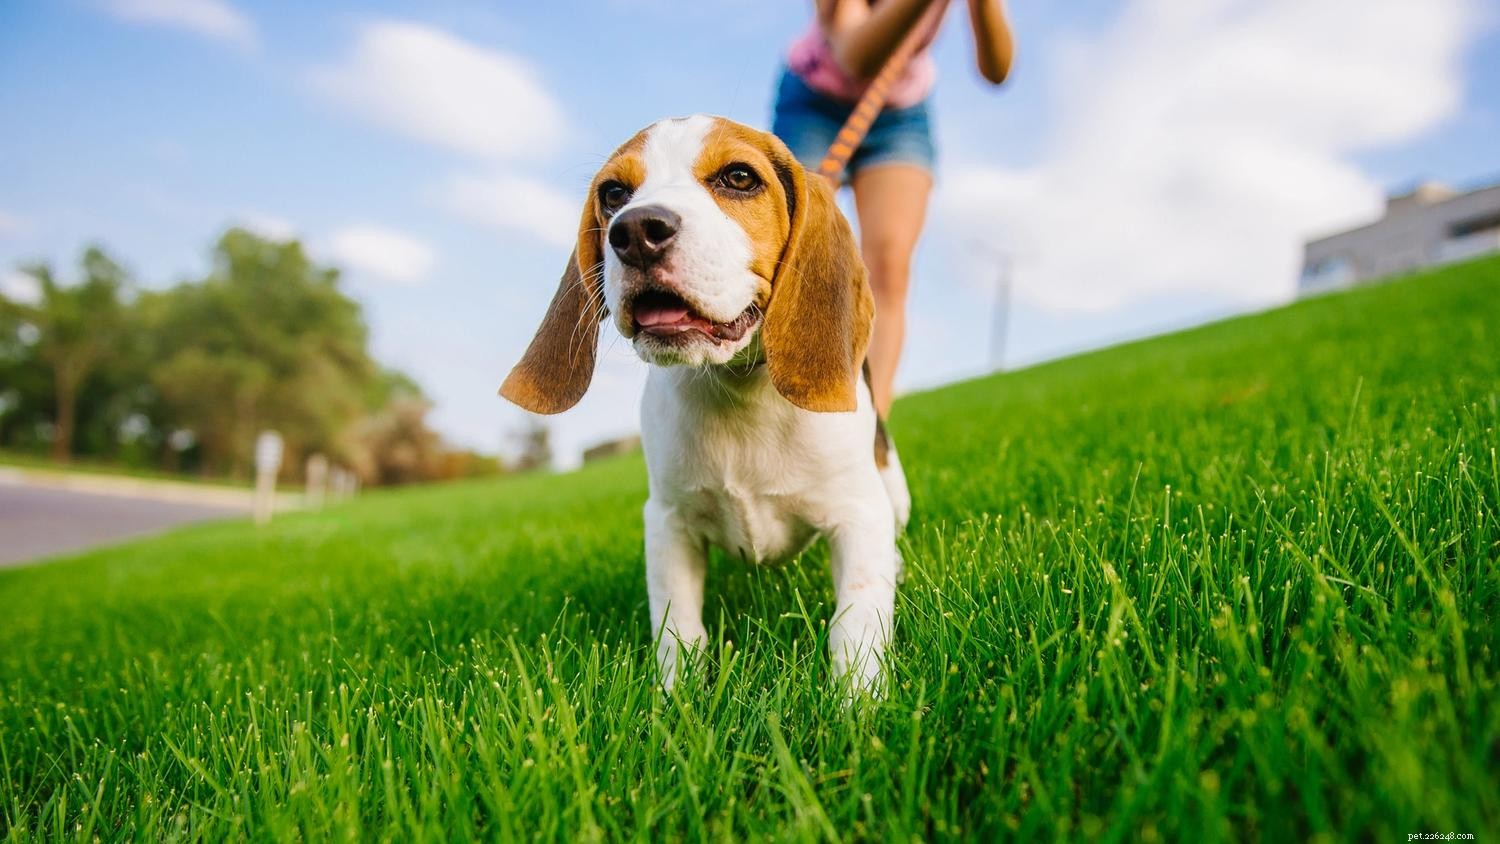 Passeggiare senza guinzaglio:come addestrare il cane a camminare educatamente